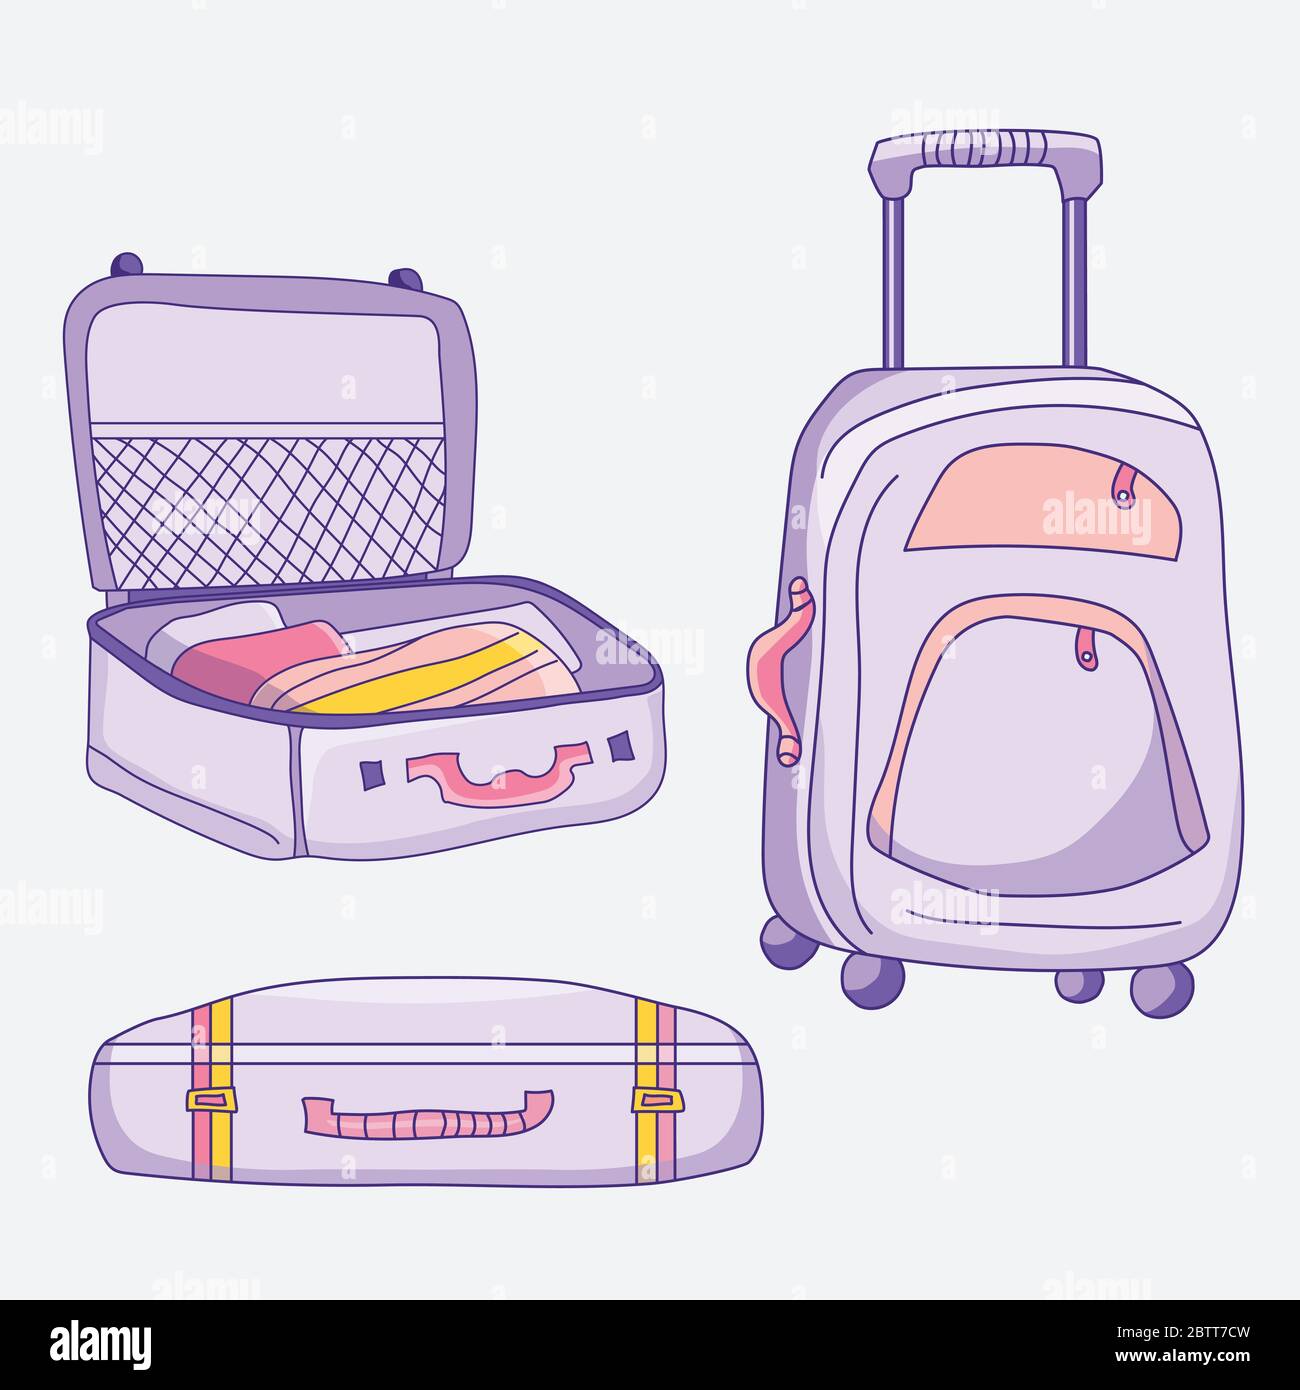 Immagine vettoriale dei bagagli. Valigie diverse - aperte, chiuse, con oggetti, in piedi, su ruote di colore porpora-rosa Illustrazione Vettoriale